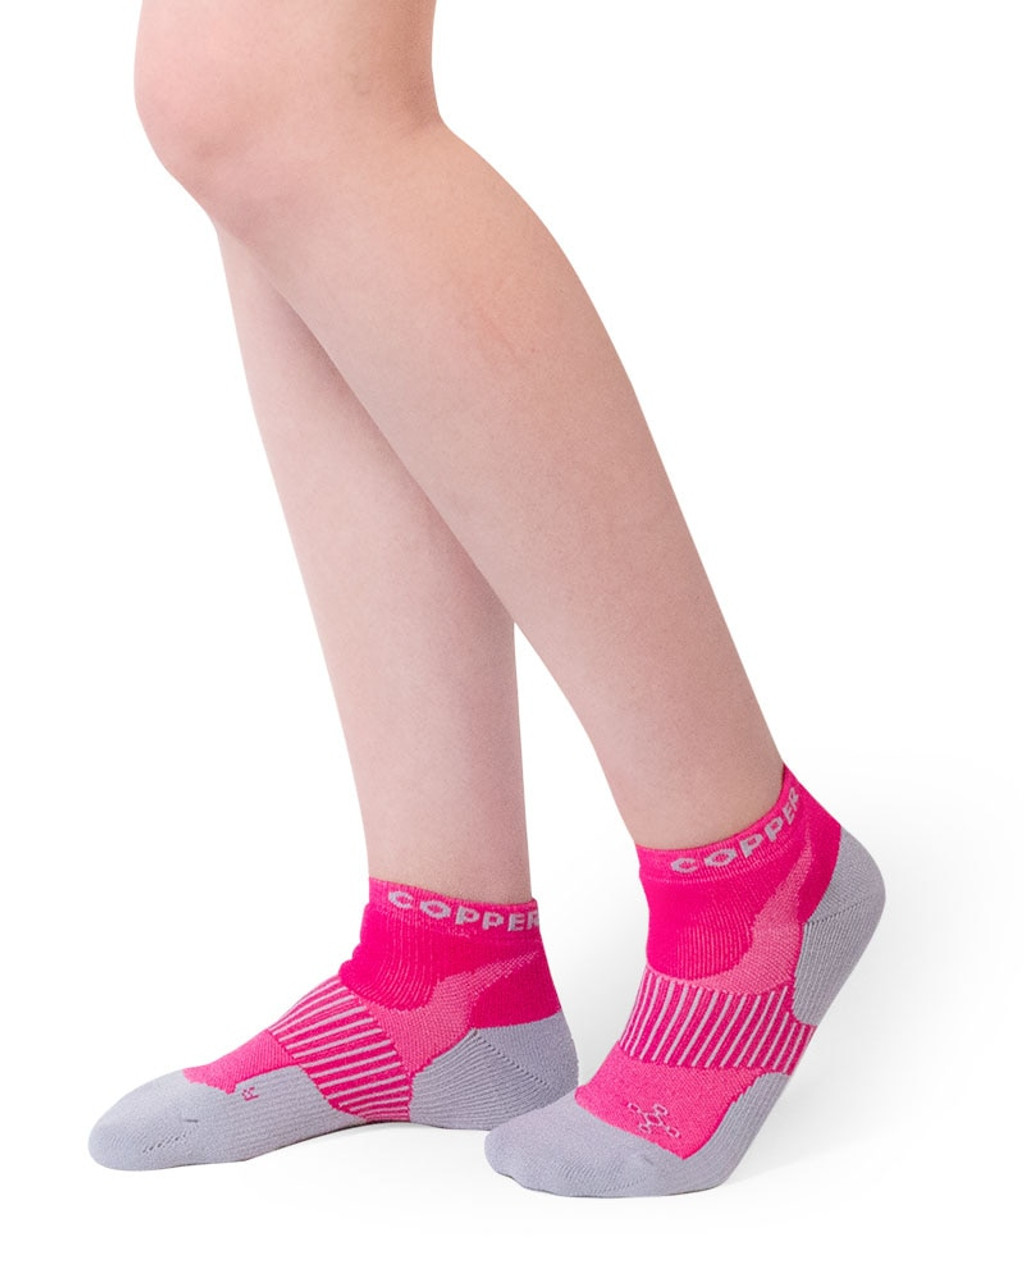 Women's Performance Socks